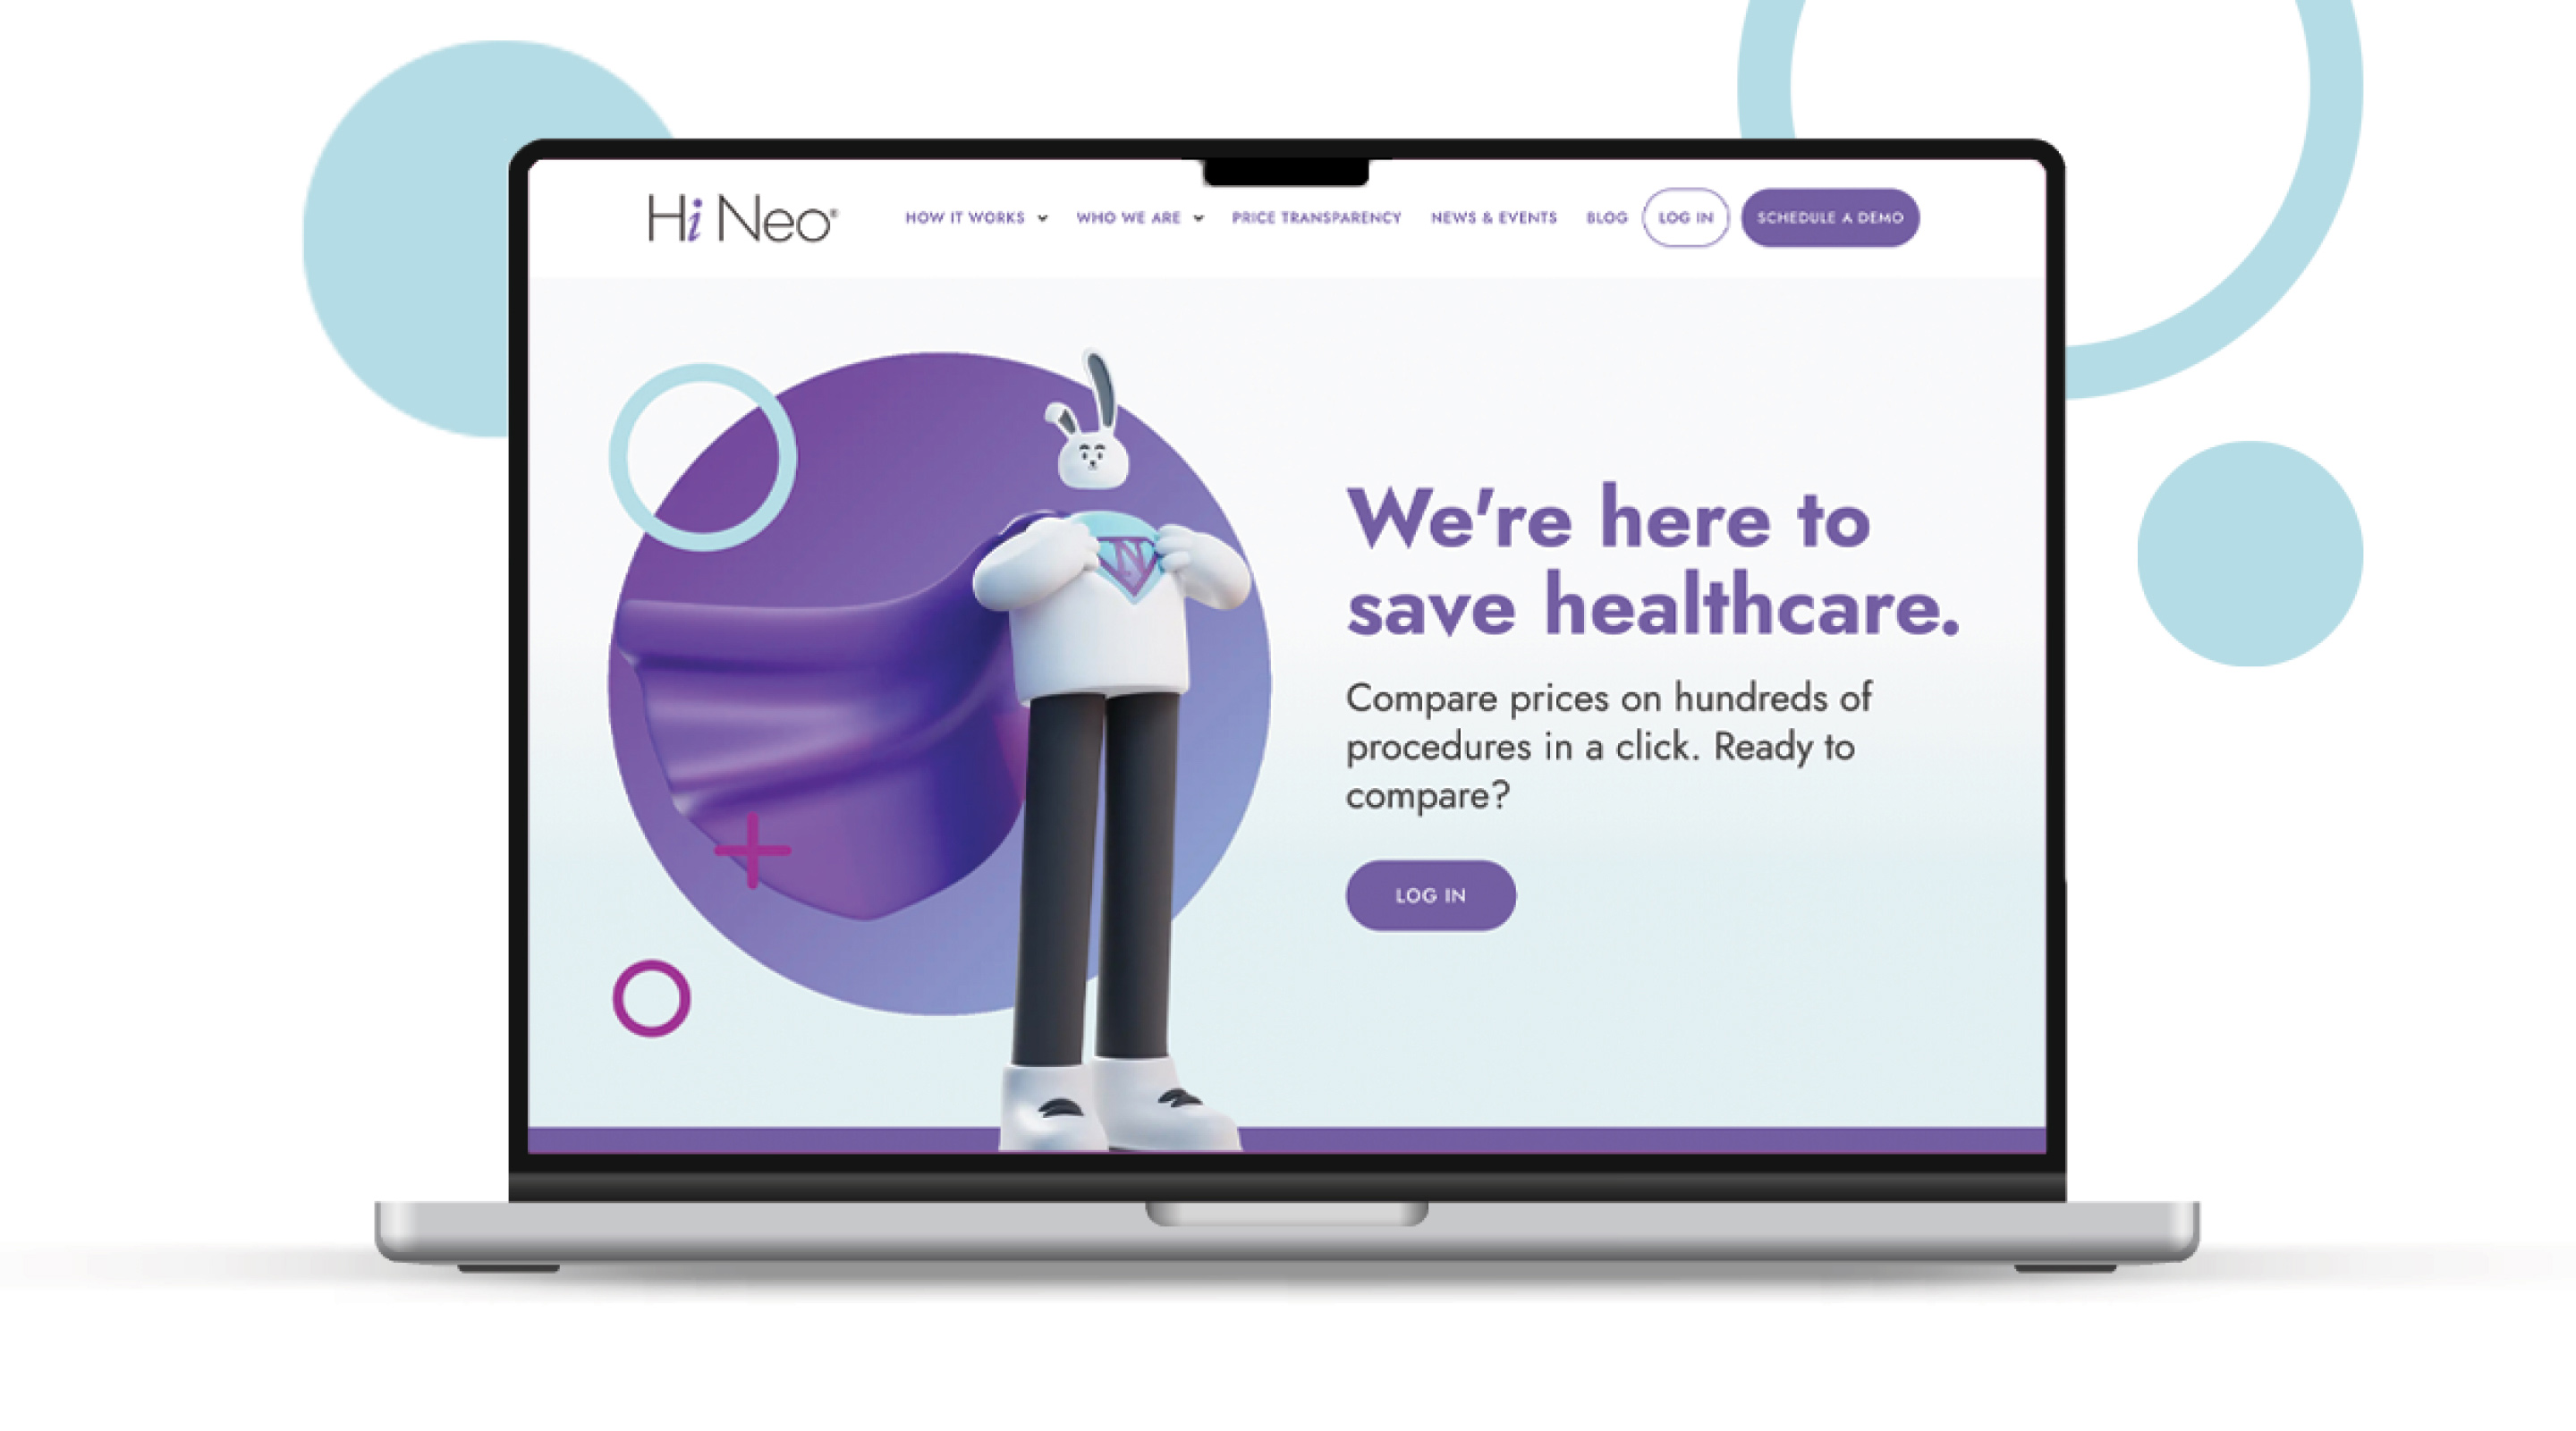 Image of Hi Neo website homepage